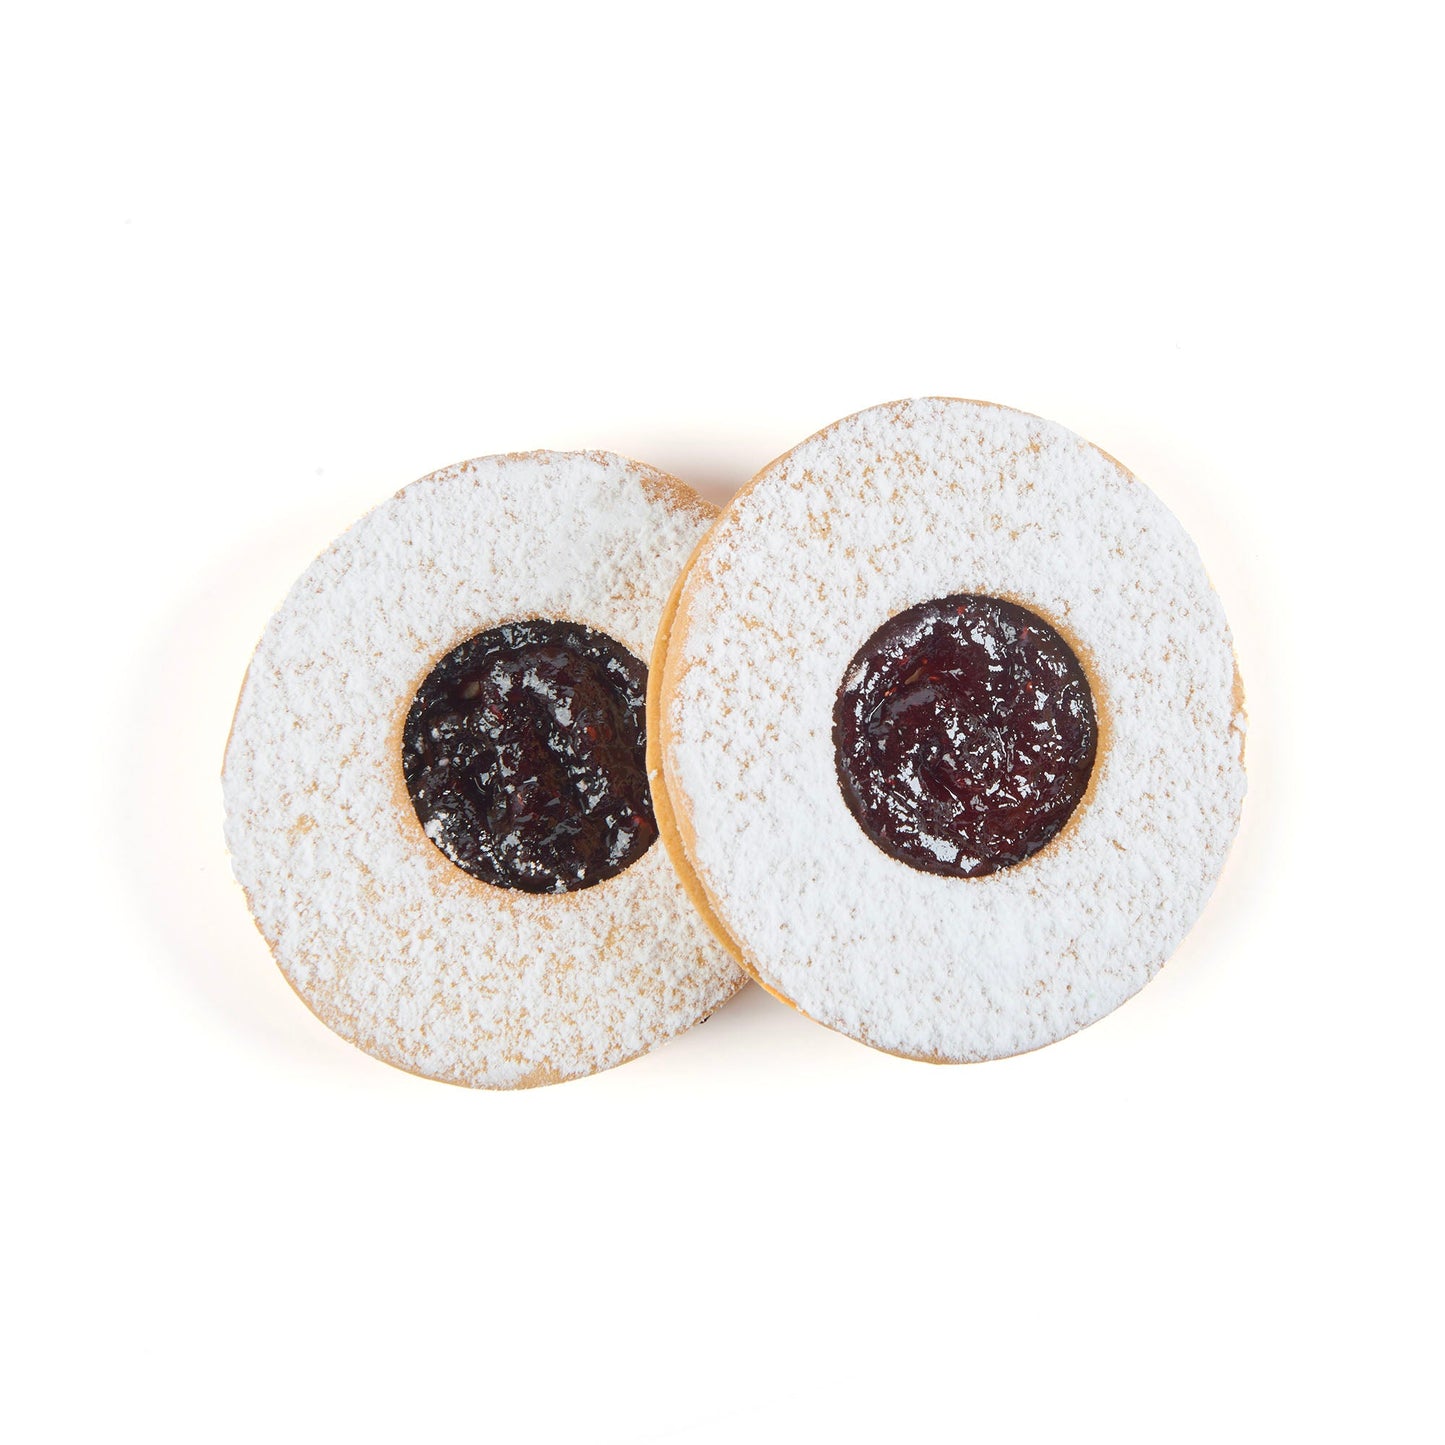 Cherry Occhi Di Bue Shortbread Cookies